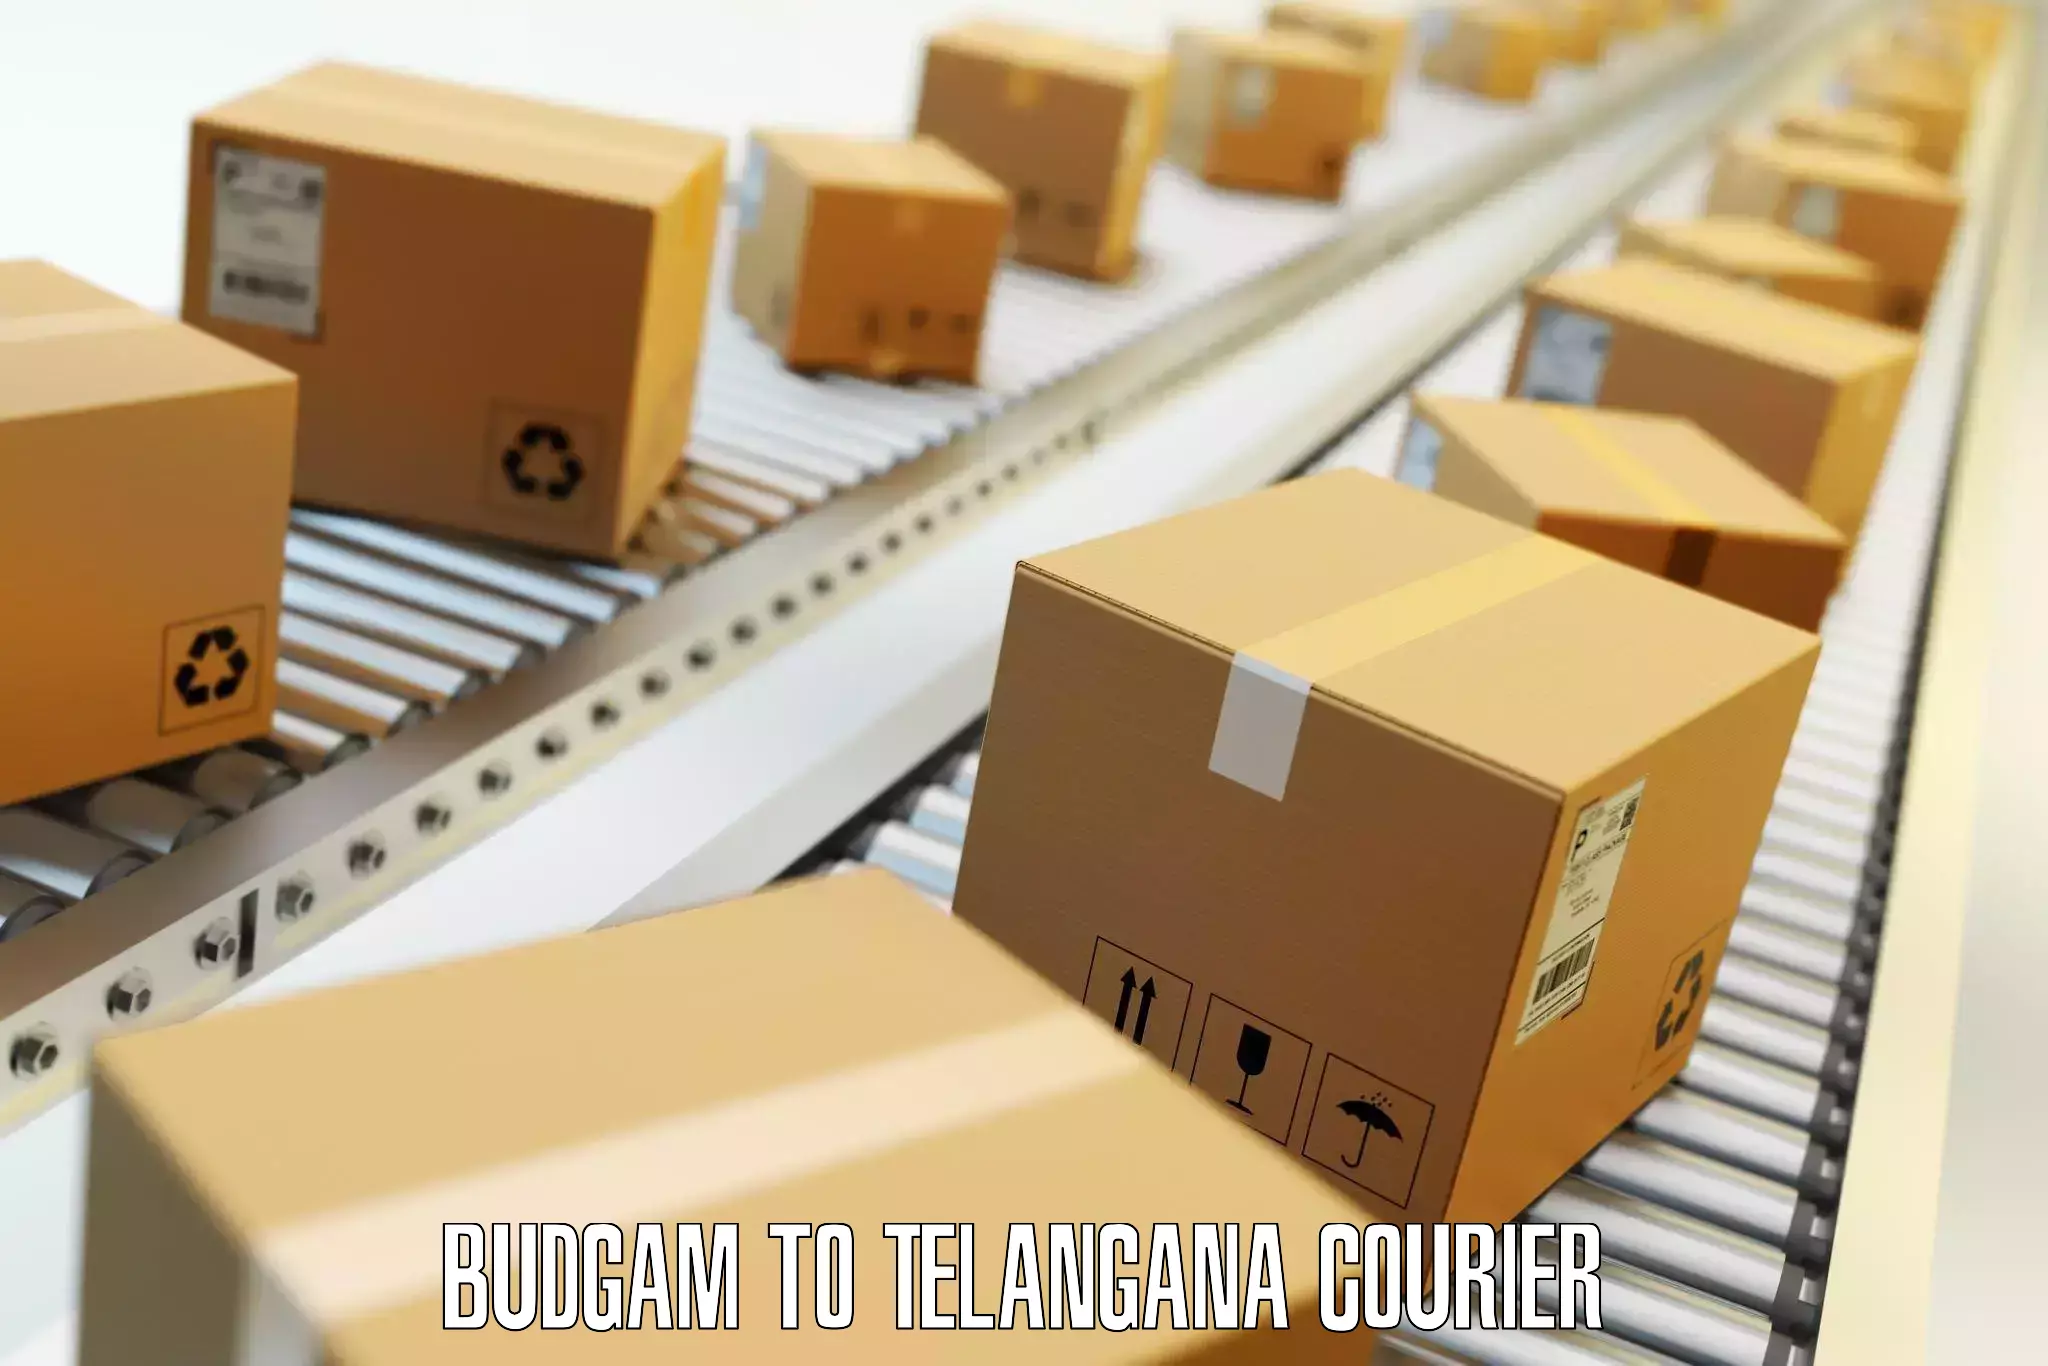 Luggage shipment strategy Budgam to Telangana